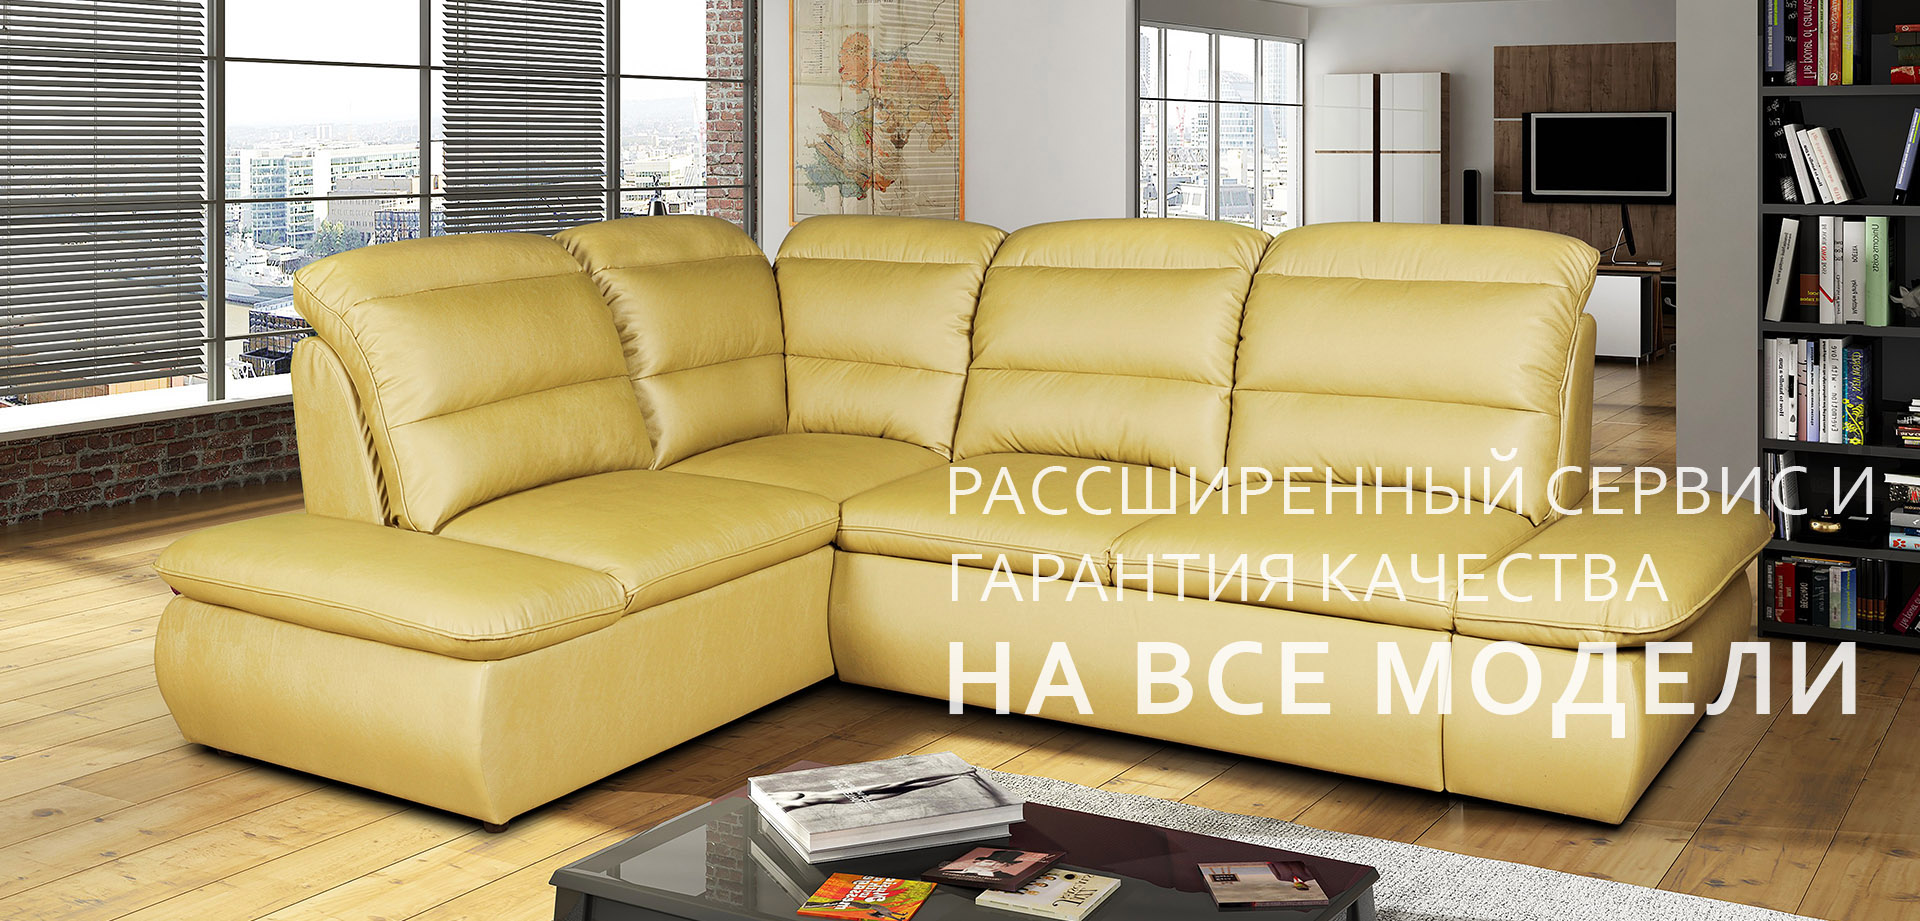 Ульяновская мебельная фабрика бландо